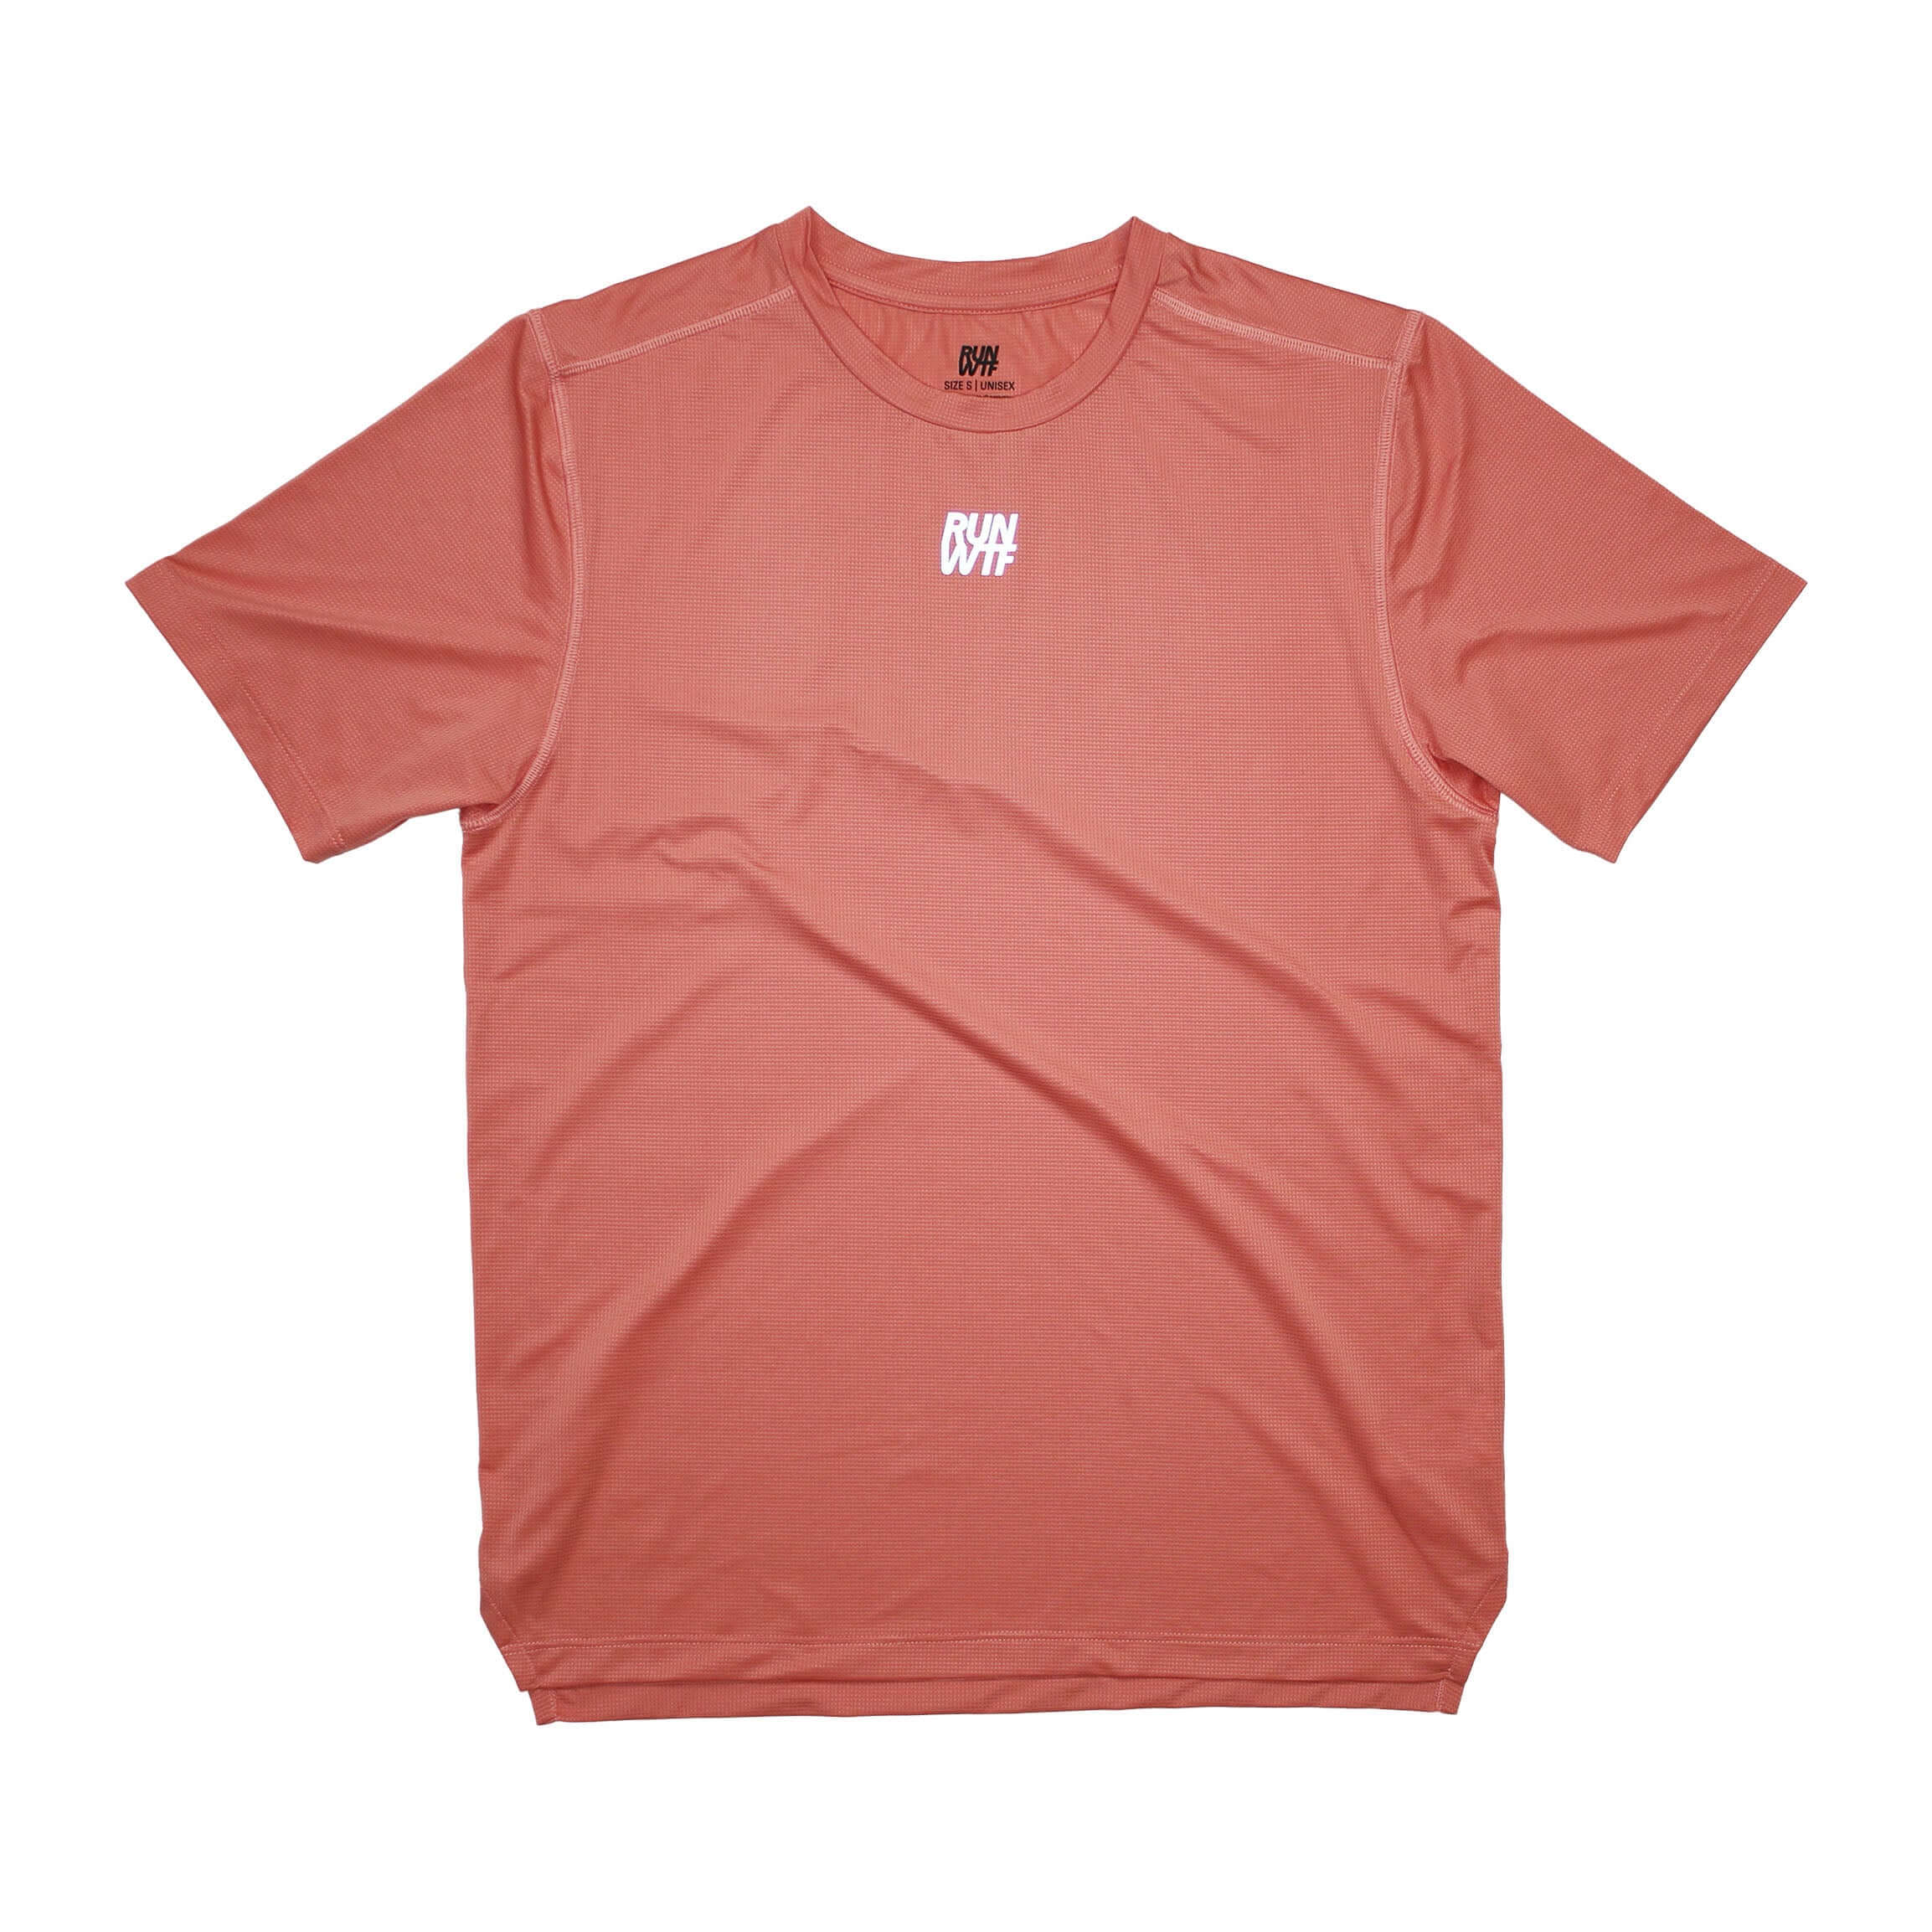 RUN WTF Running Apparel ist ein unabhängiges und faires Label für Laufbekleidung. Shirt für hochintensives Running. Leicht und atmungsaktiv, hergestellt aus Recycling Polyester.